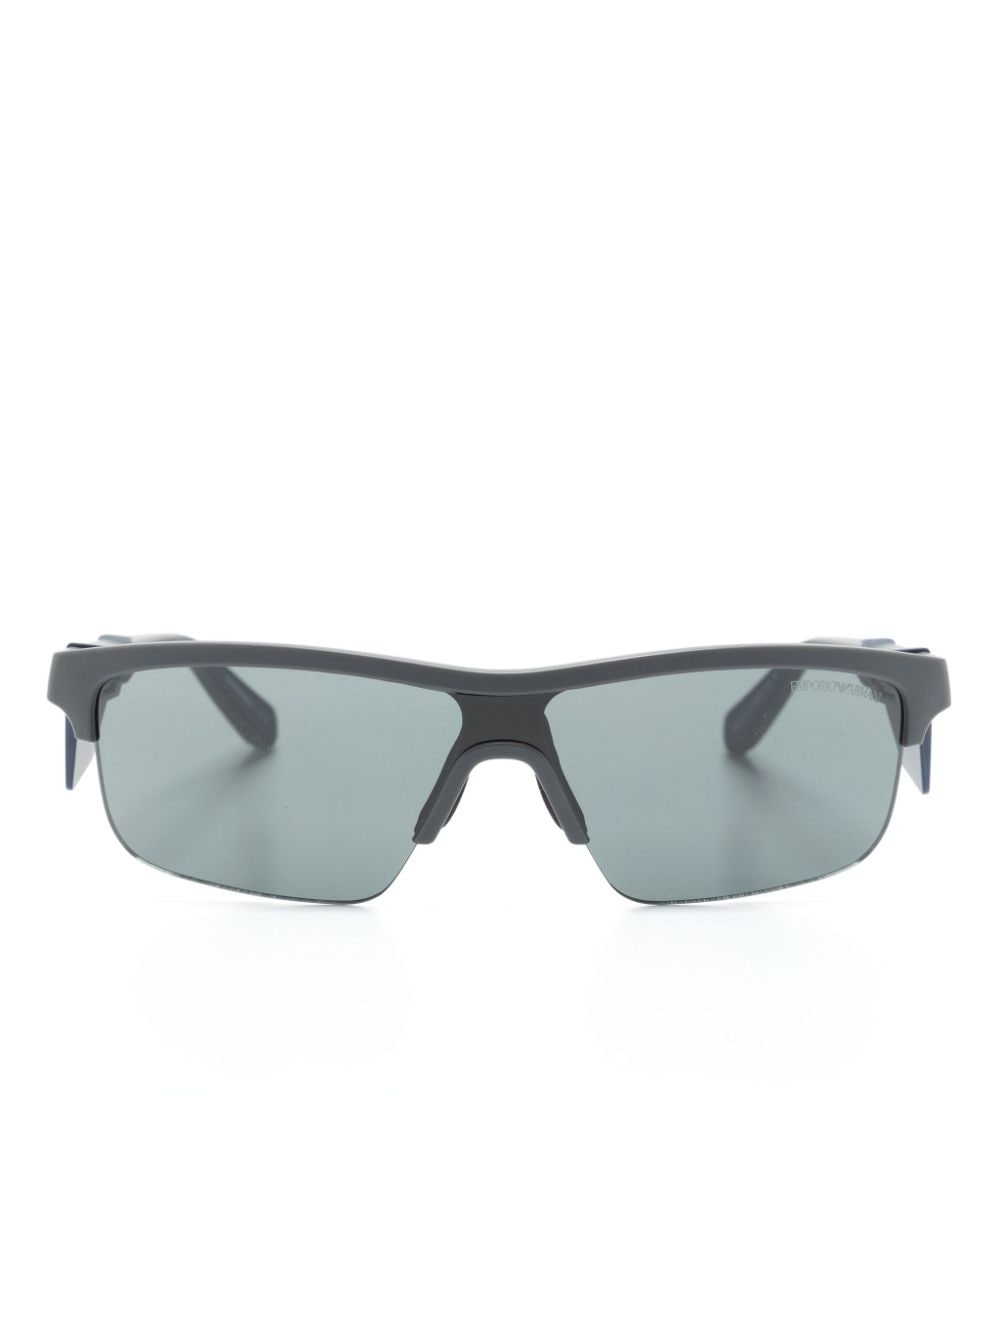 Emporio Armani shield-frame sunglasses - Grey von Emporio Armani